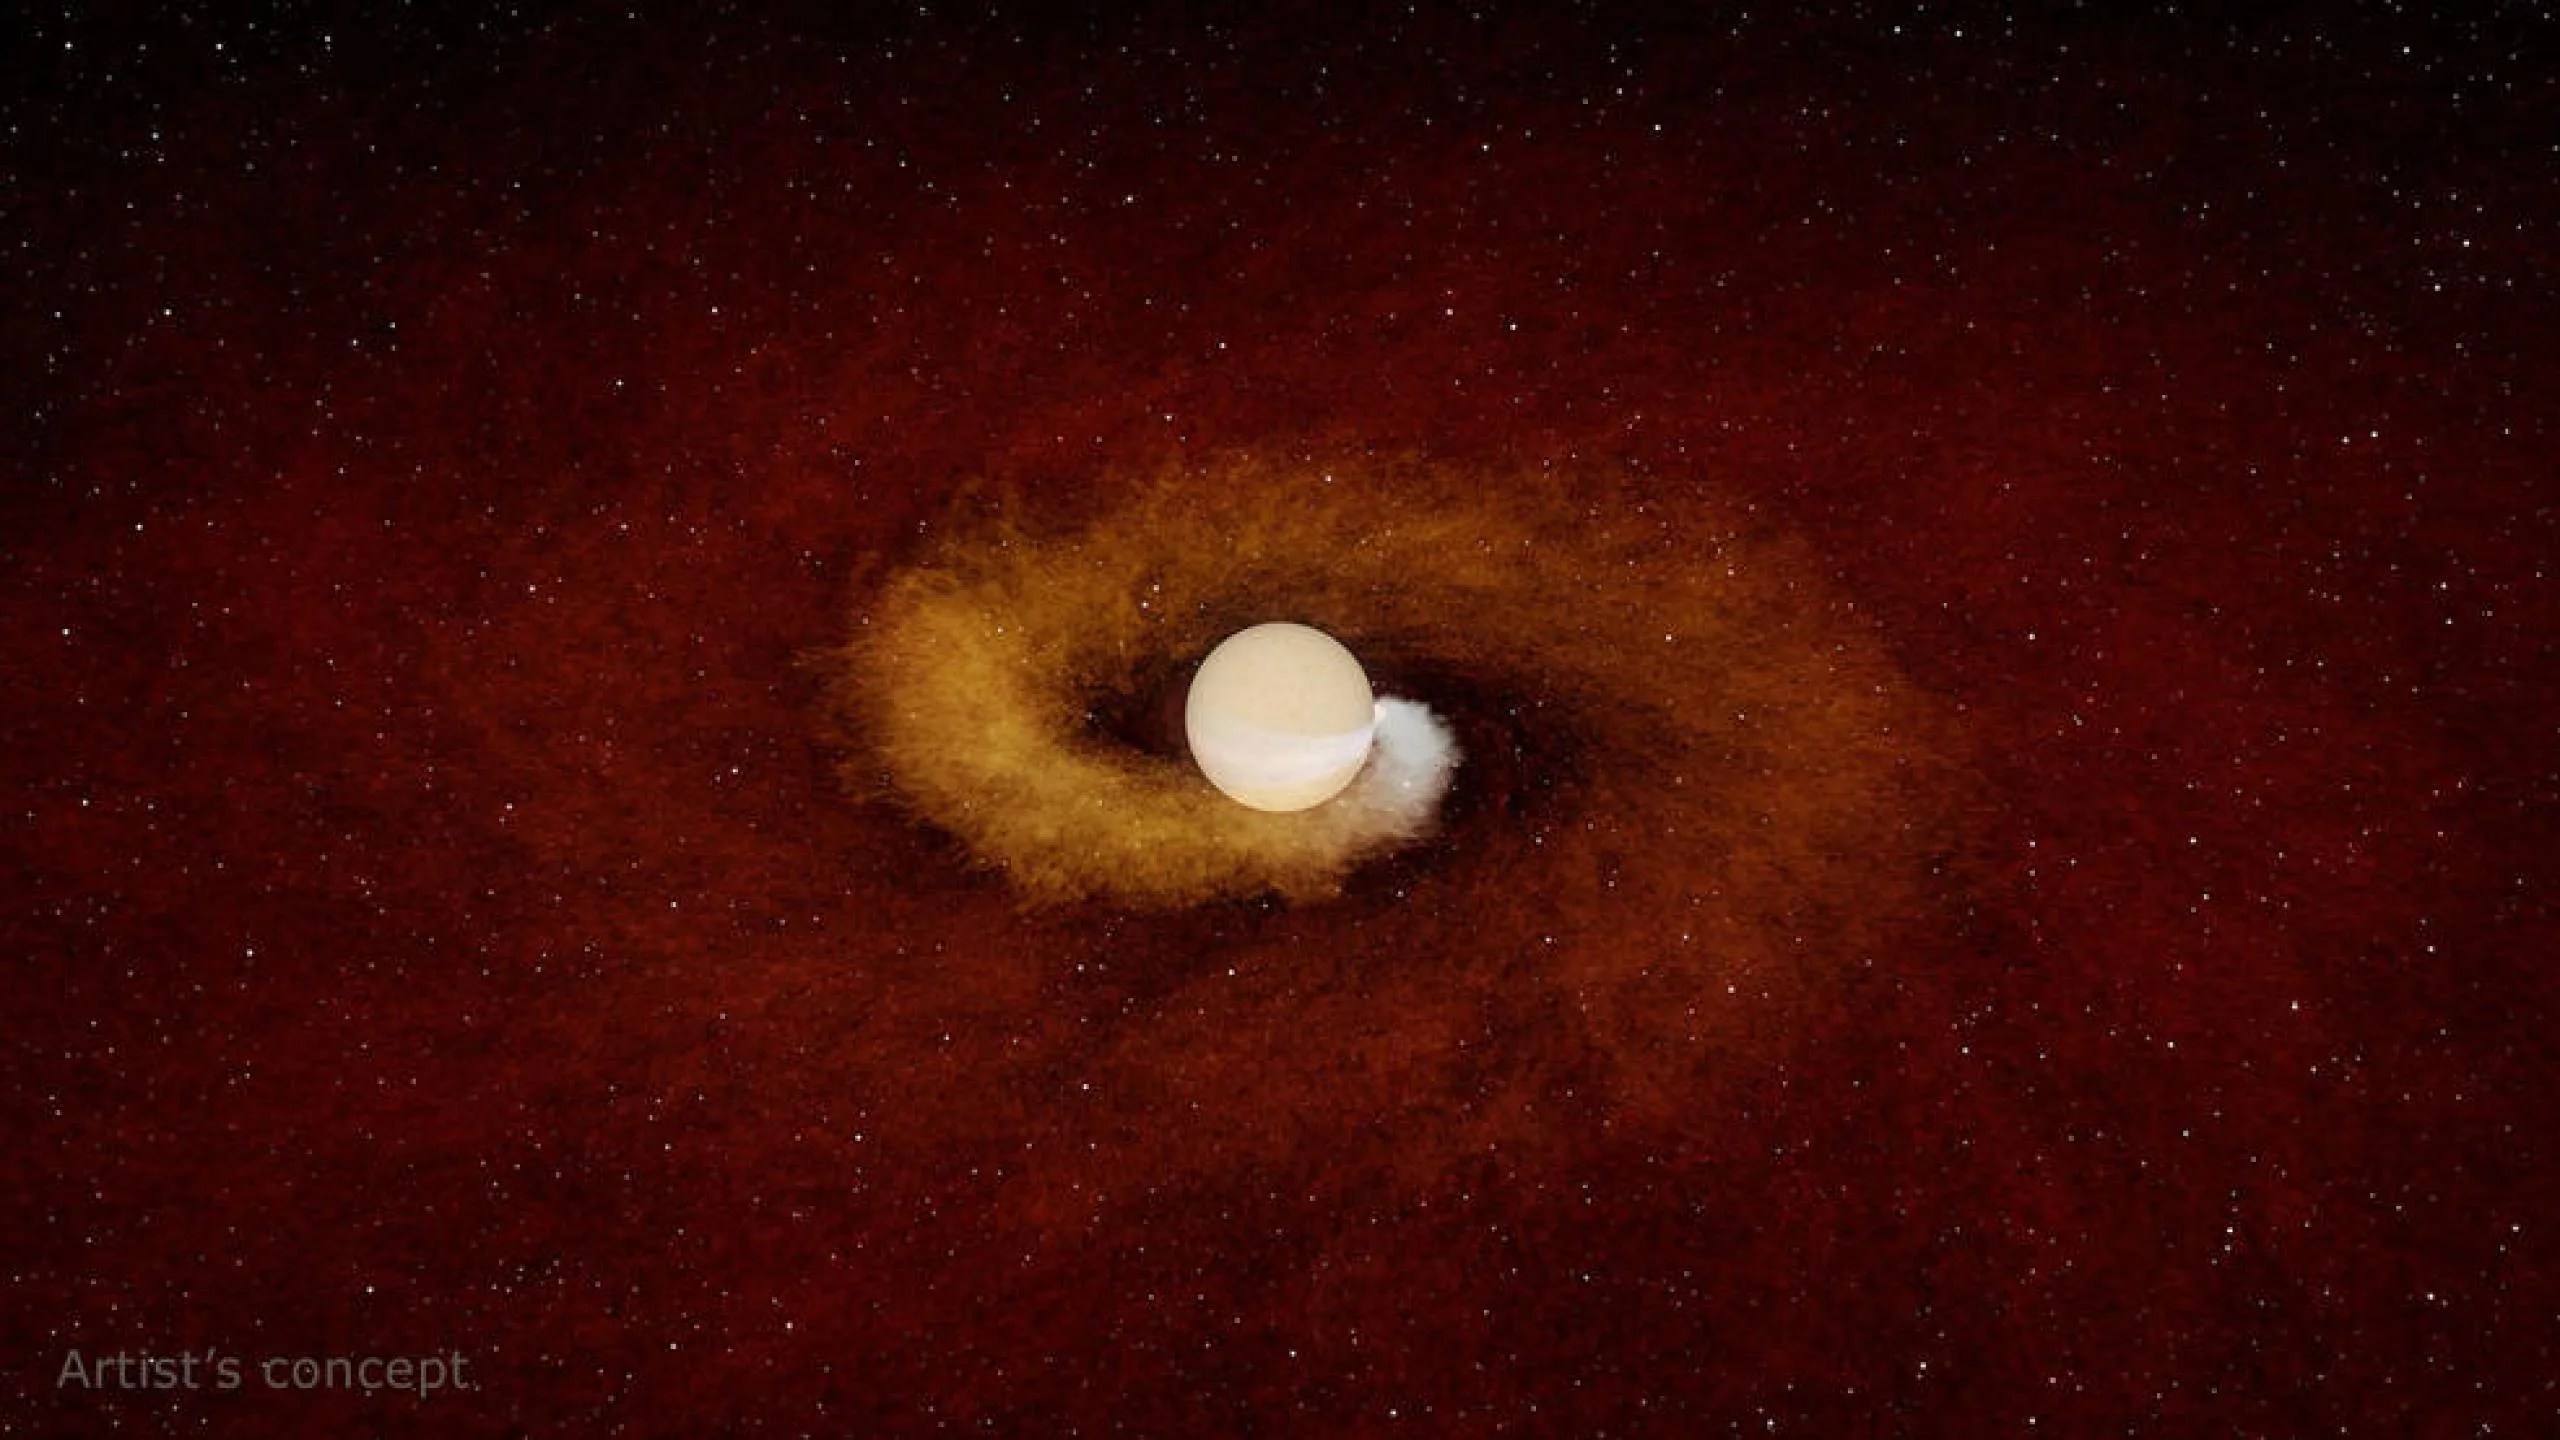 Esta ilustración muestra a un planeta de color naranja blanquecino cayendo gradualmente en espiral hacia su estrella anfitriona. El planeta, del tamaño de Júpiter, saca el gas de la estrella, enviándolo al espacio. Allí, el gas se enfría y se convierte en polvo, que es visible para los astrónomos. En la imagen se ve de color blanquecino y cobrizo. El fondo es la oscuridad del espacio.